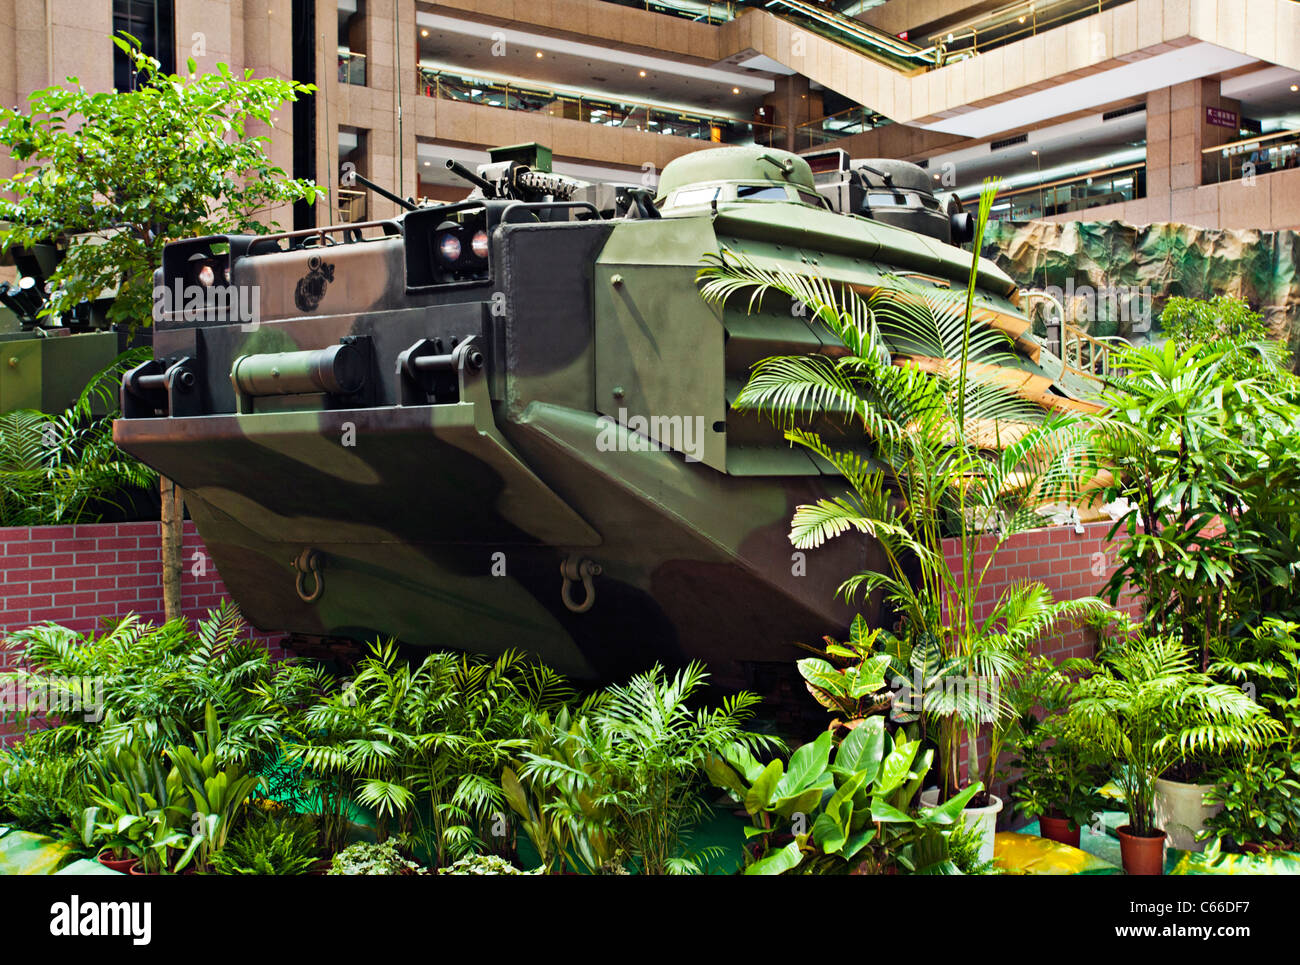 AAVP7 Amphibious Assault Vehicle, Taipei Aerospace Defense Technology Exhibition, 2011, Taiwan Stock Photo